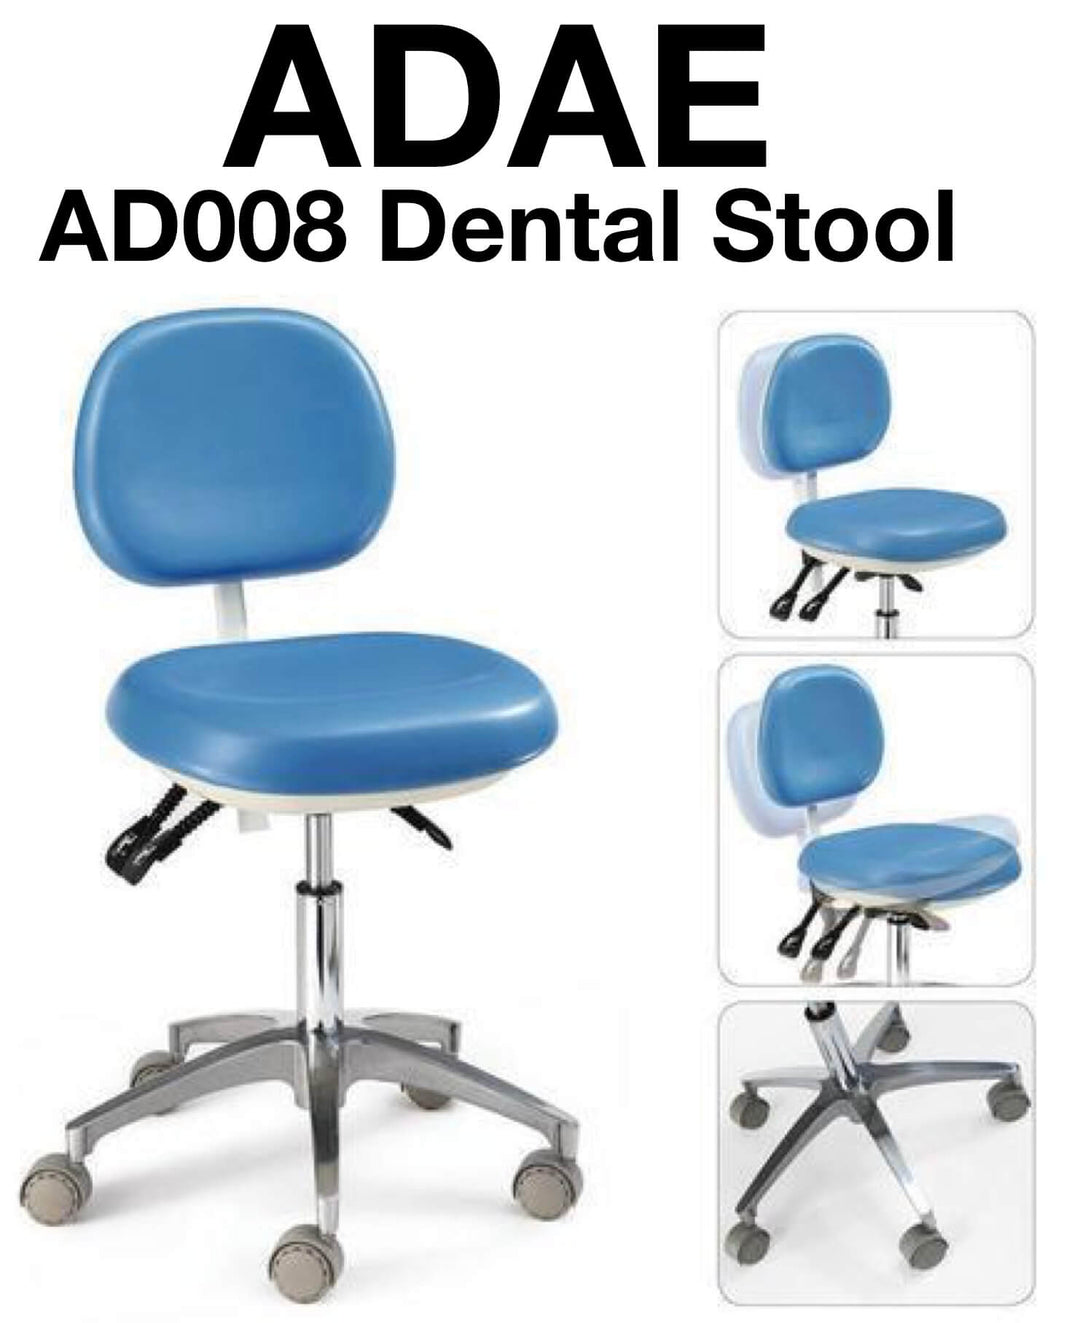 ADAE AD008 dental stool - ADAE Dental Online Store